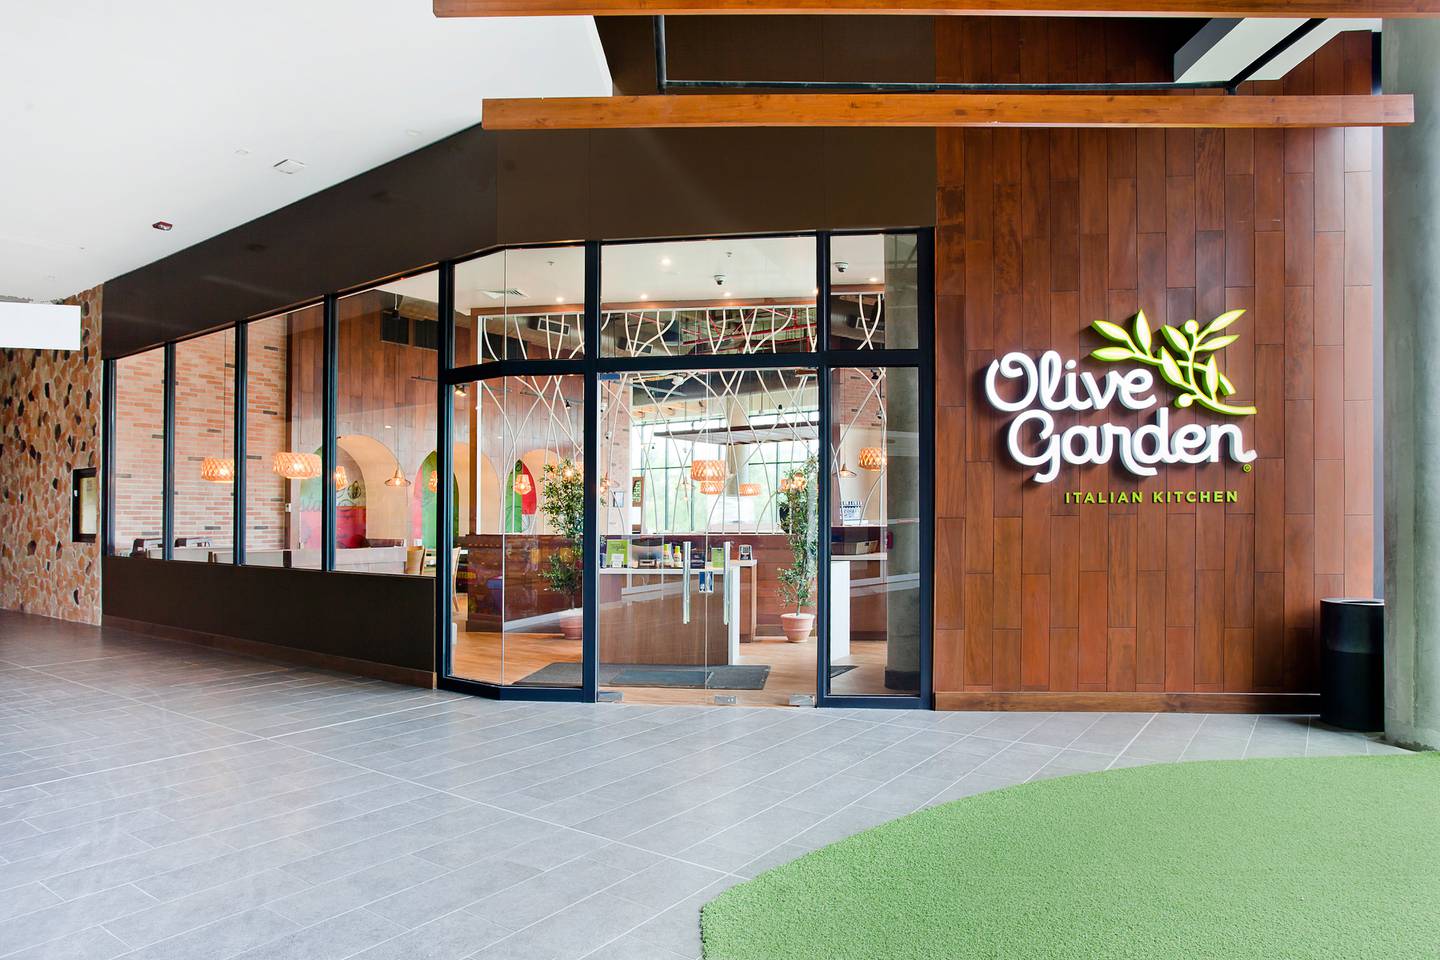 El restaurante italiano Olive Garden abre, este 28 de octubre, su primer local, en el centro comercial Escazú Village.